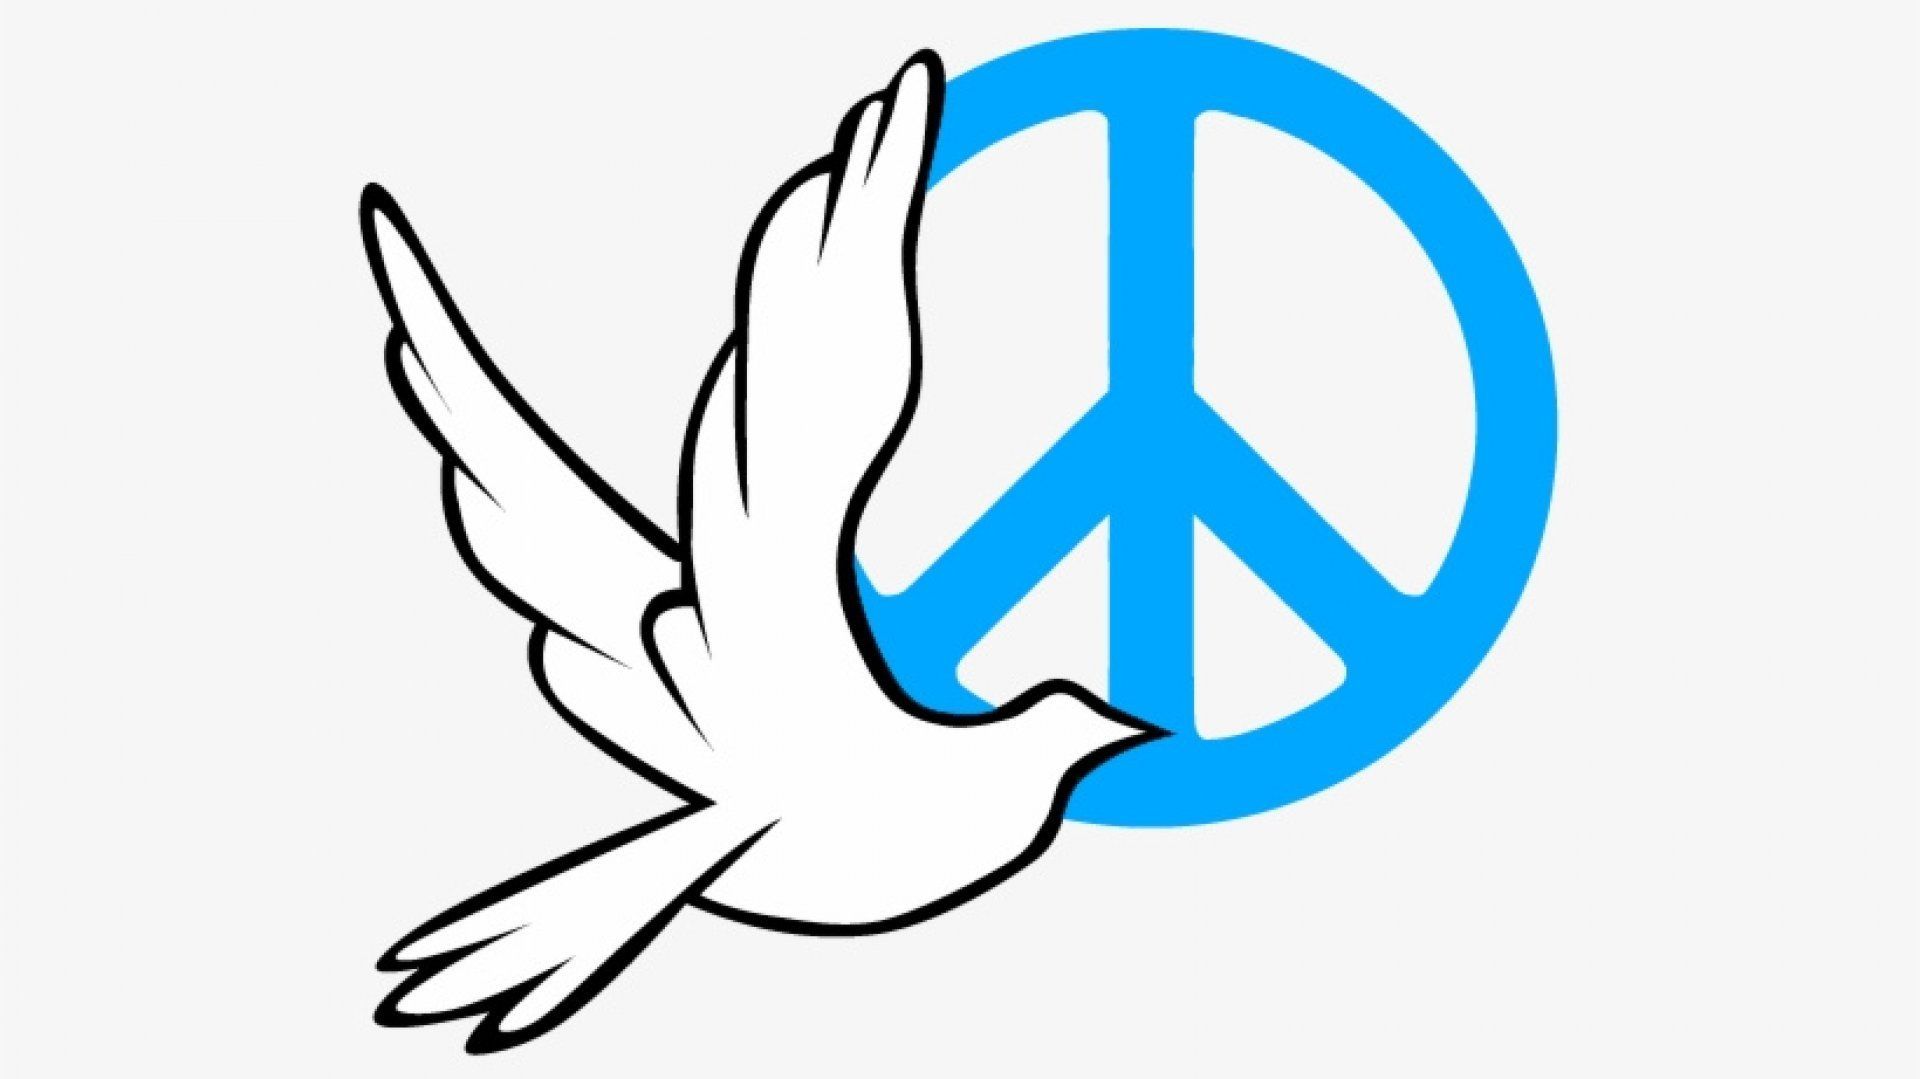 Astăzi, 21 septembrie este marcată Ziua Mondială a Păcii. Vezi la ce activități poți participa